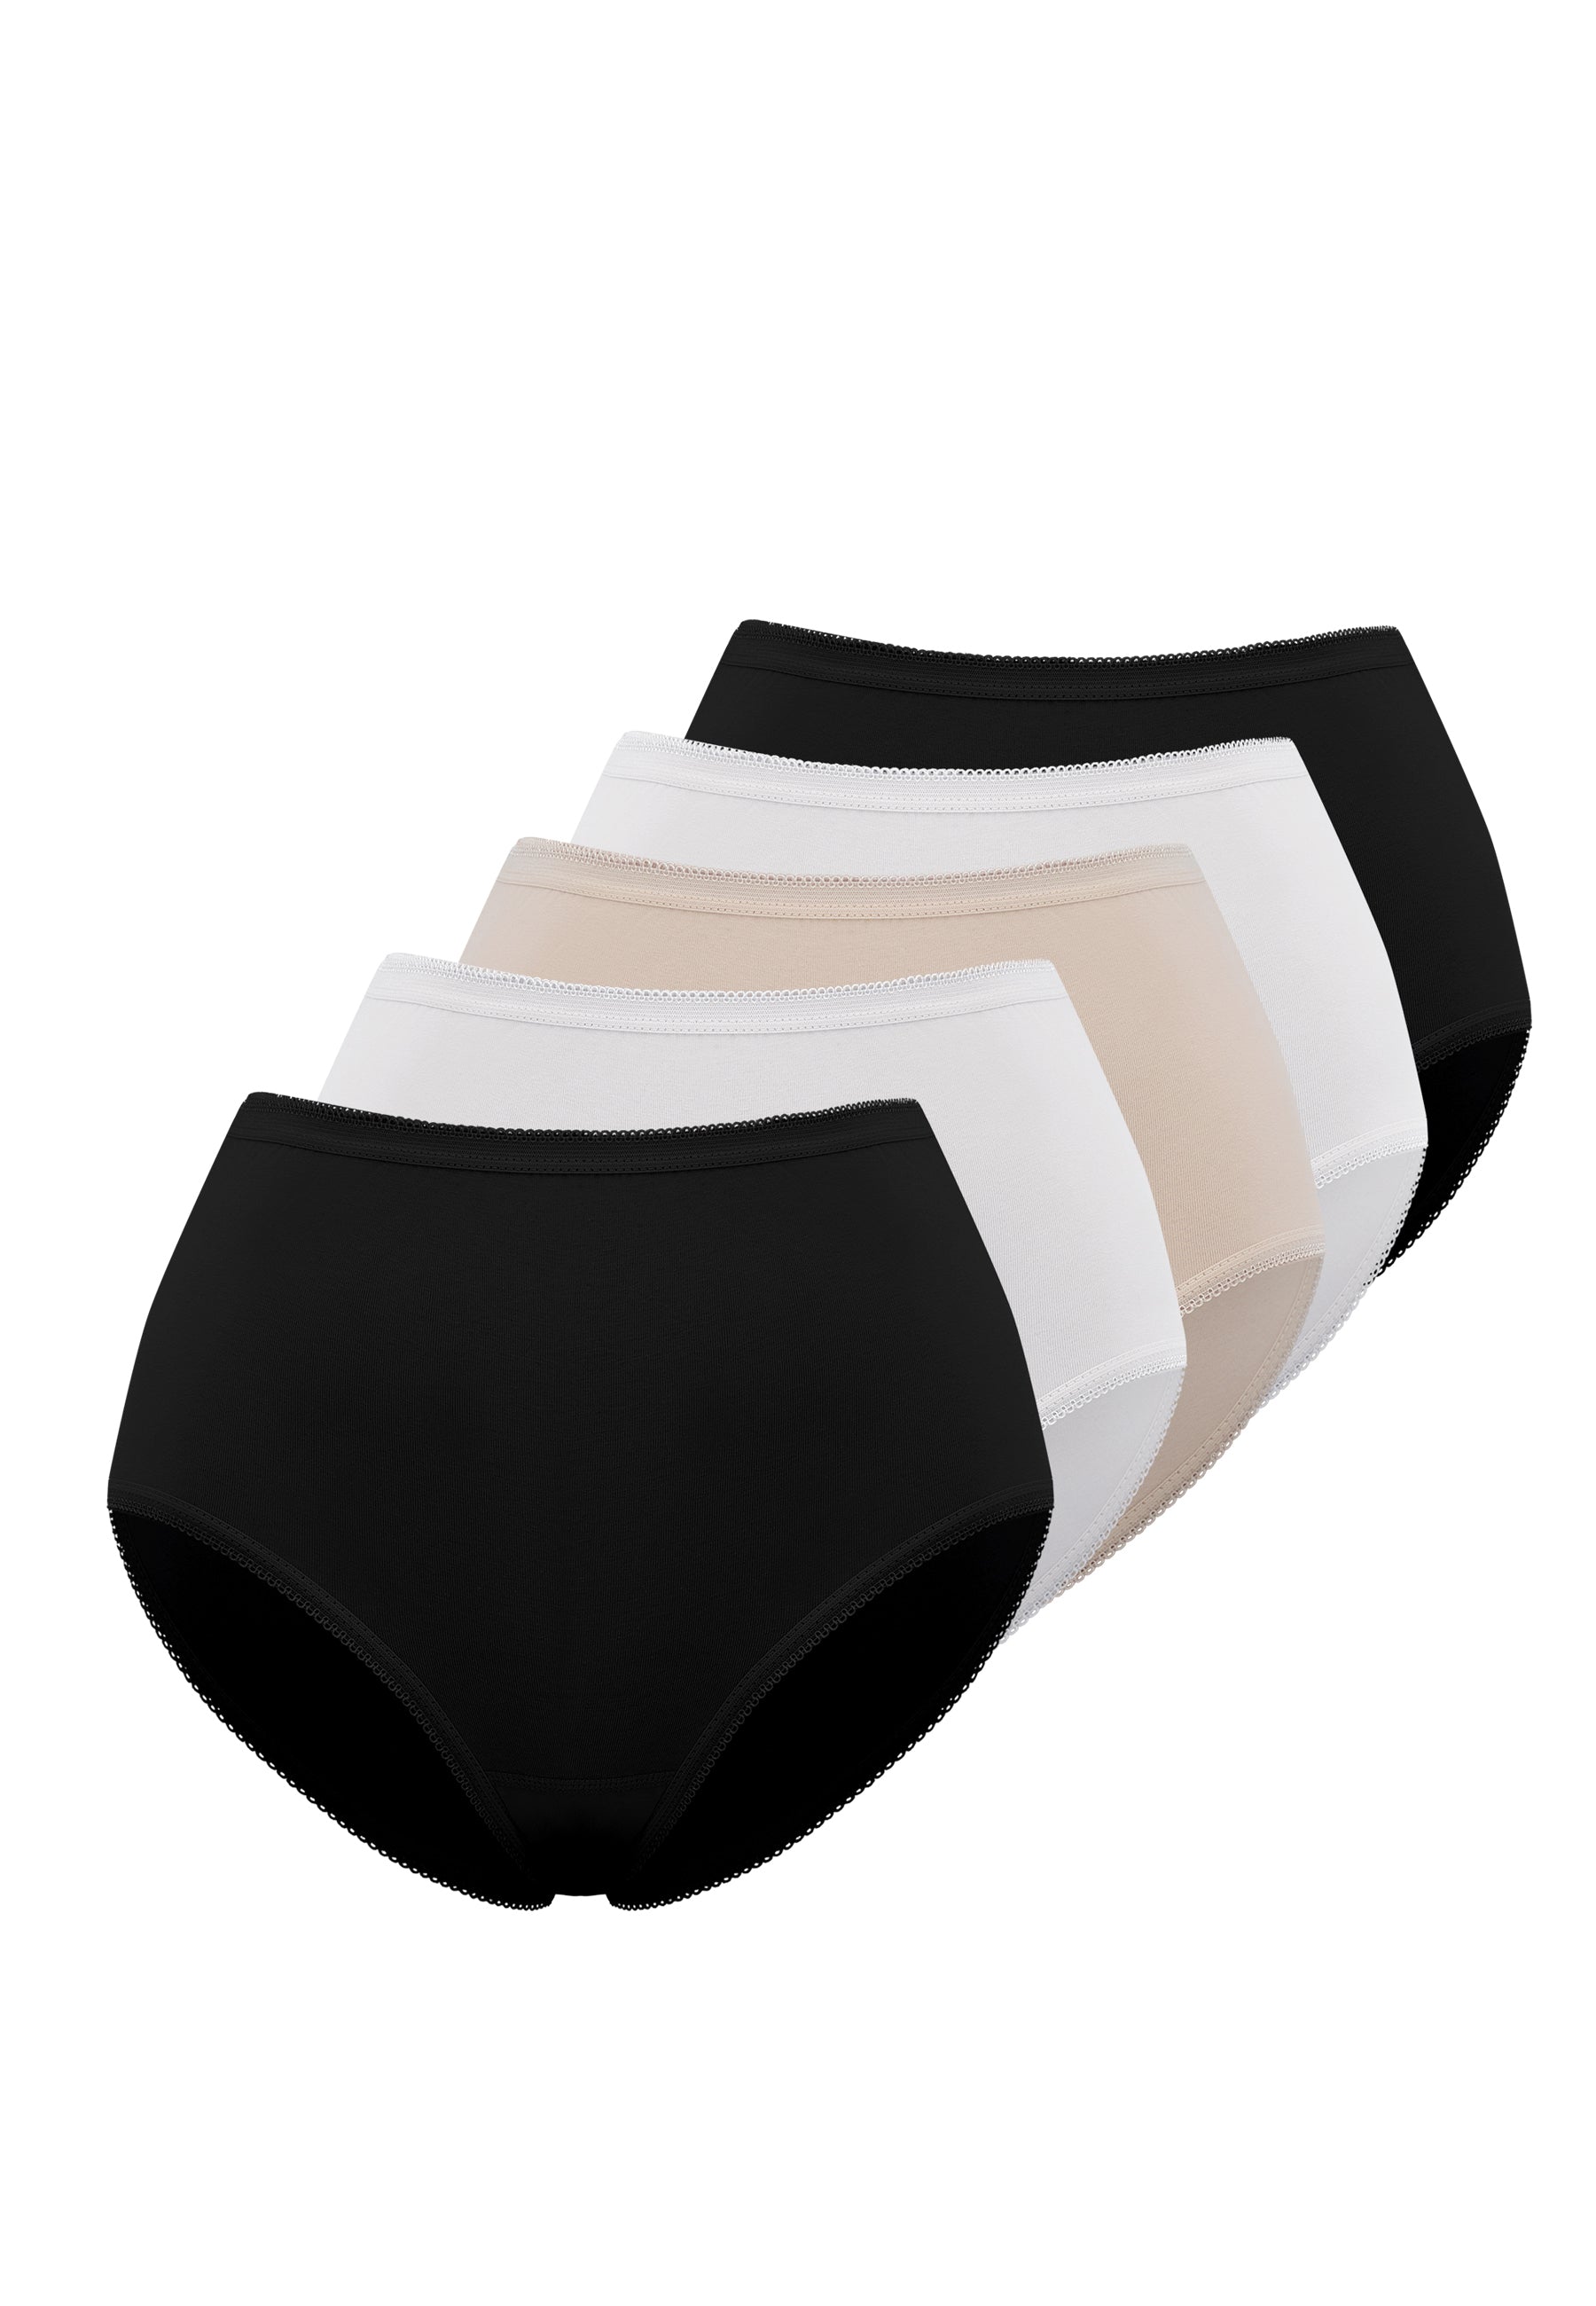 5’li Beyaz, Siyah, Ten Rengi Pamuk Elastan Karışımı Maxi Boy Yüksek Bel Kadın Slip OLIVIA RIB MAXI - Underwear - Westmark London EU(TR) Store Organik Pamuklu Sürdürülebilir Moda